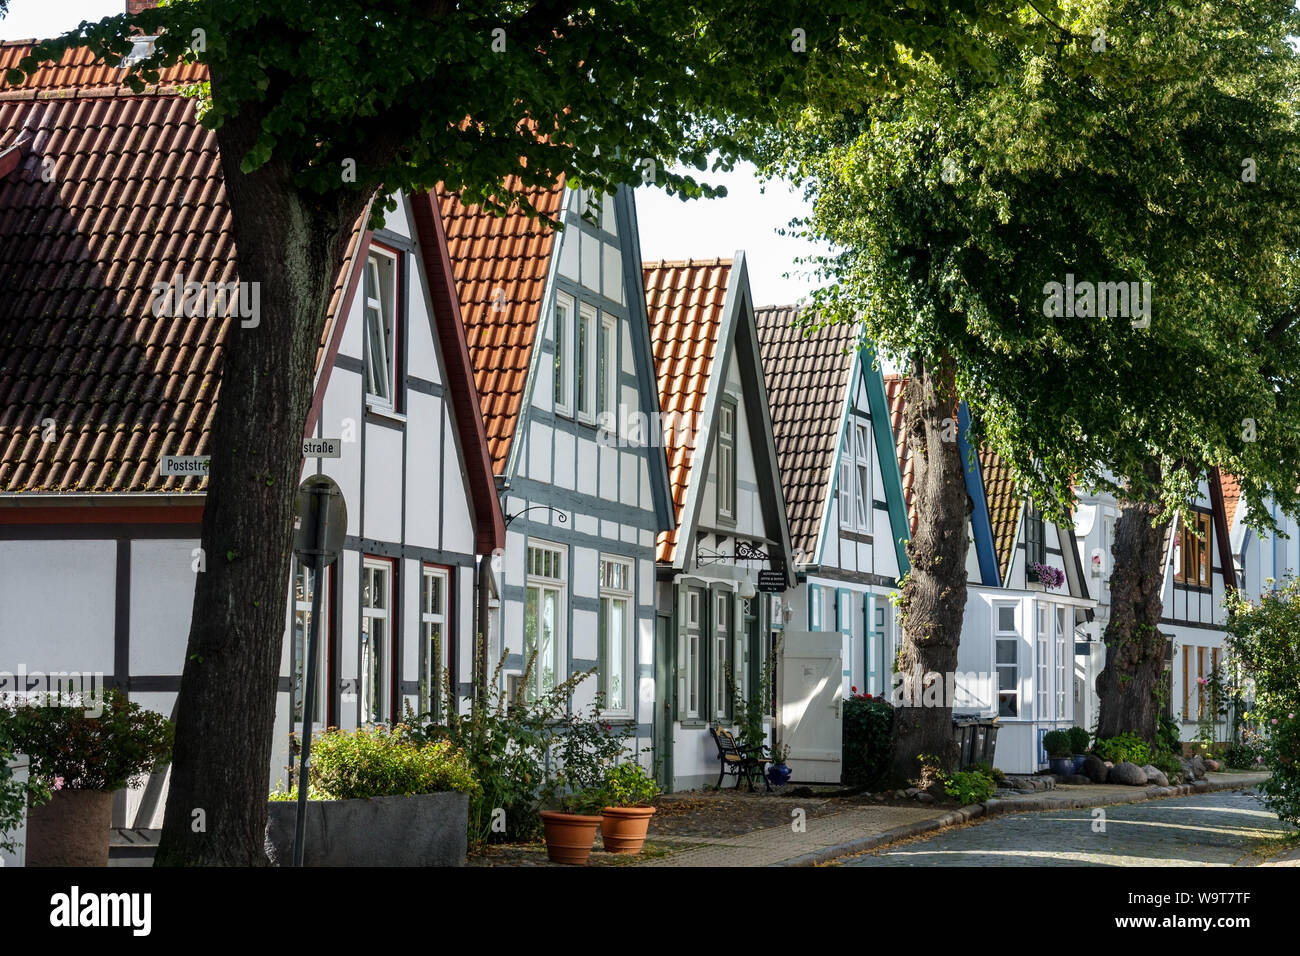 Maisons anciennes à colombages de Alexandrinenstrasse, Vieille Ville, Rostock, Rostock, Allemagne Banque D'Images